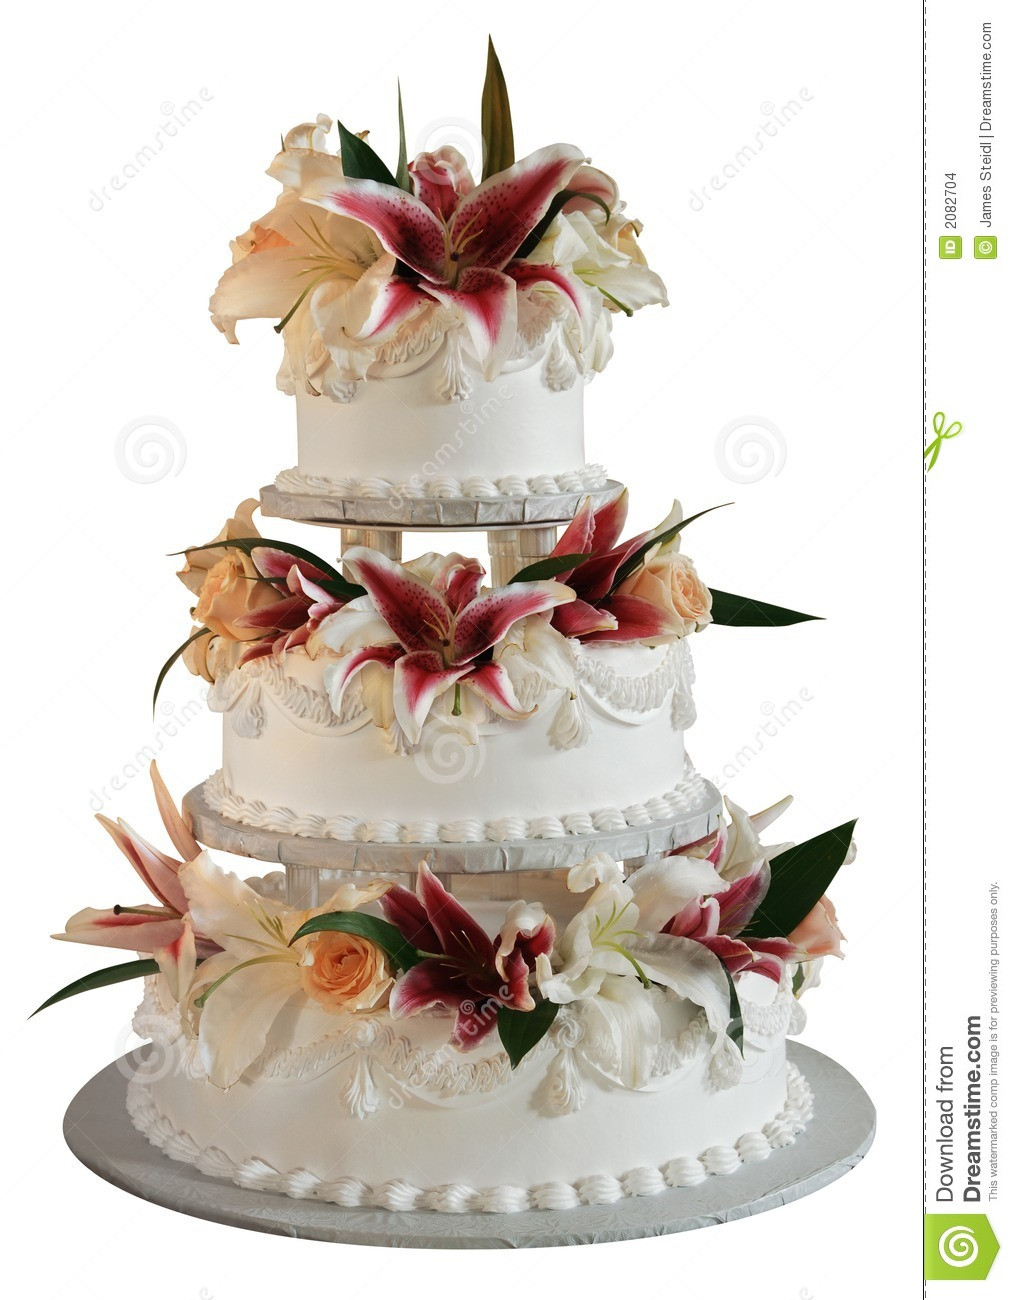 3 Layers Wedding Cakes
 3 layer wedding cake stock photo Image of roses bride